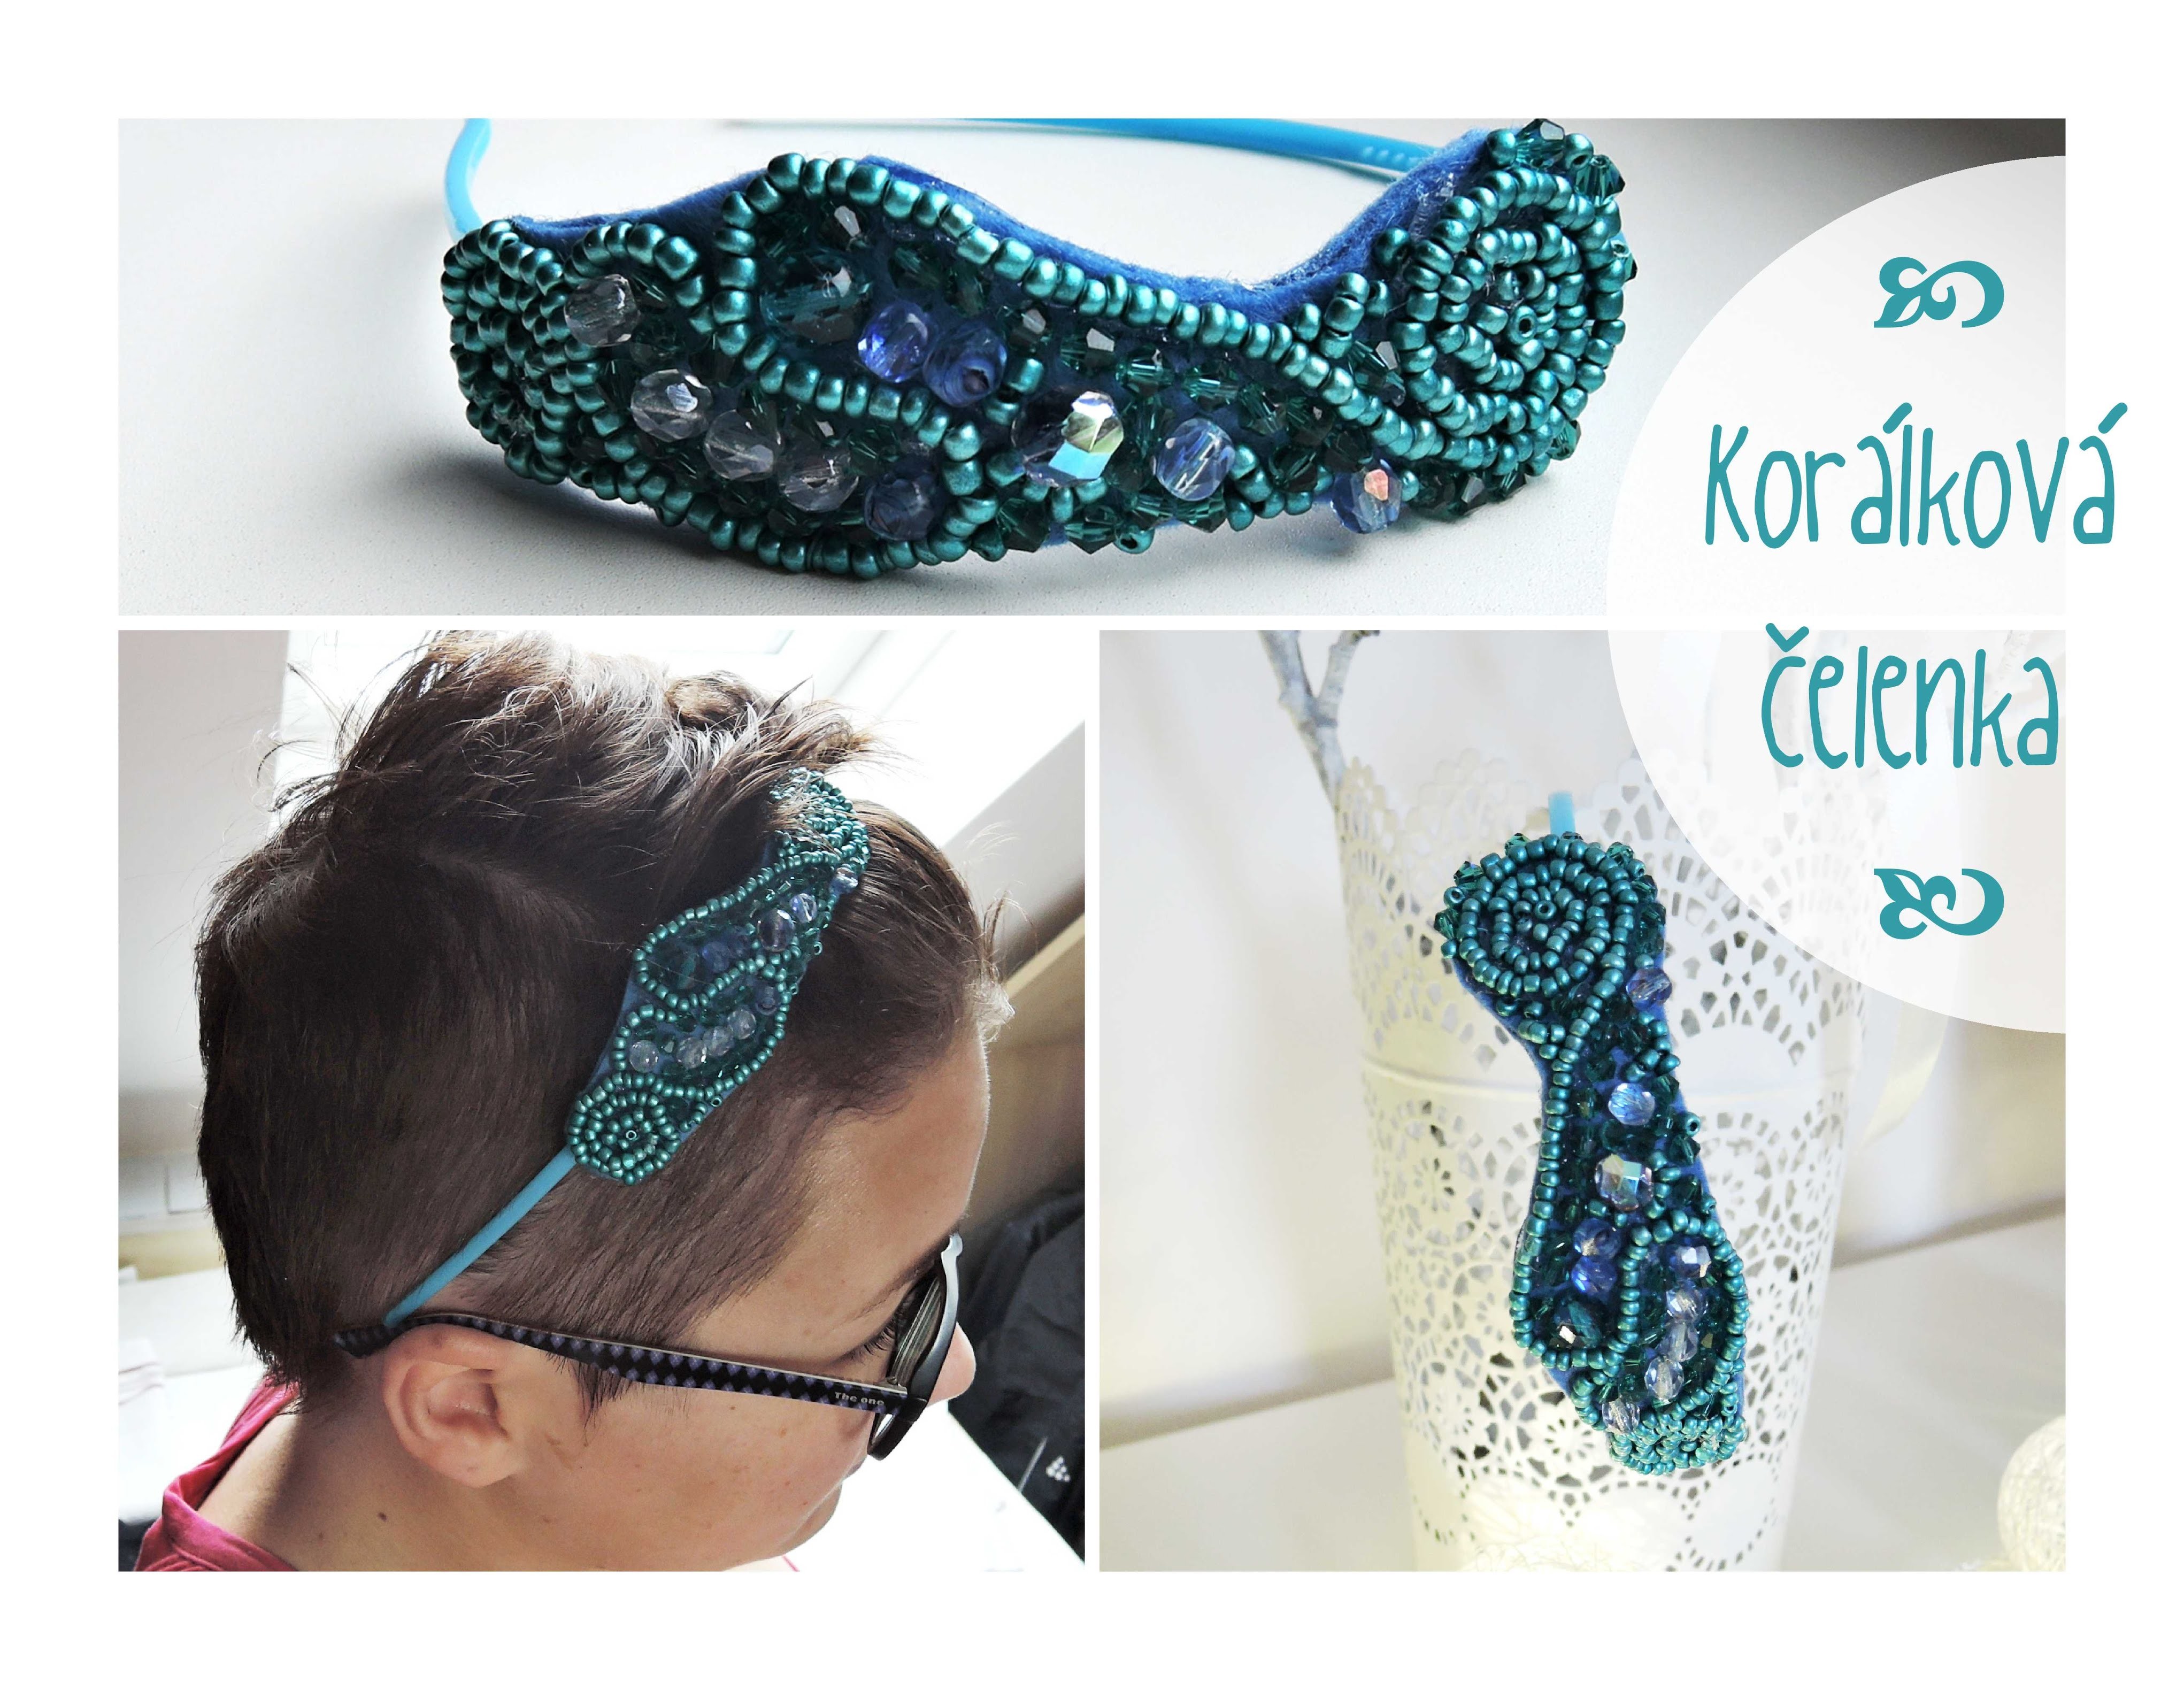 Korálková čelenka. diy beads headband